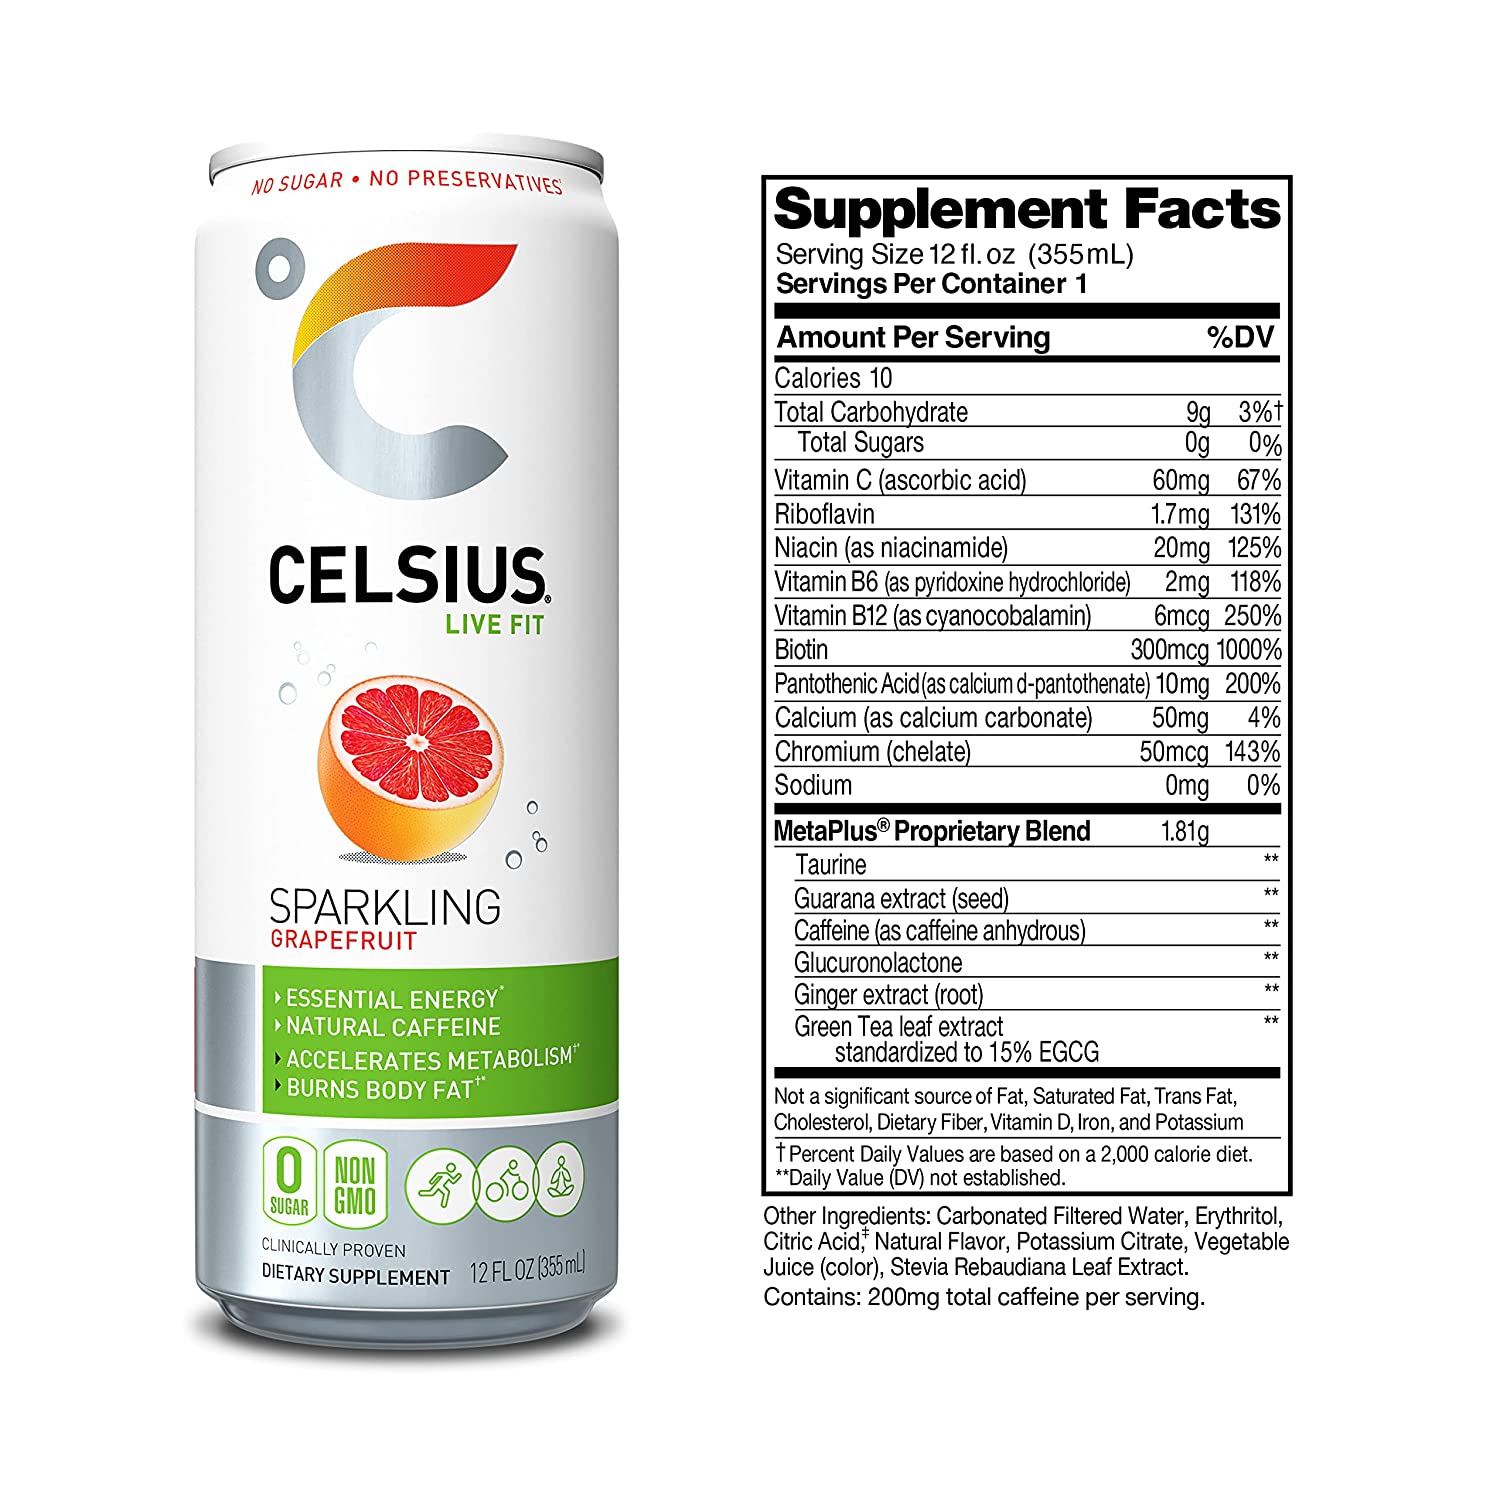 Celsius Stevia Live Fit Sparkling Grapefruit / Pack of 12